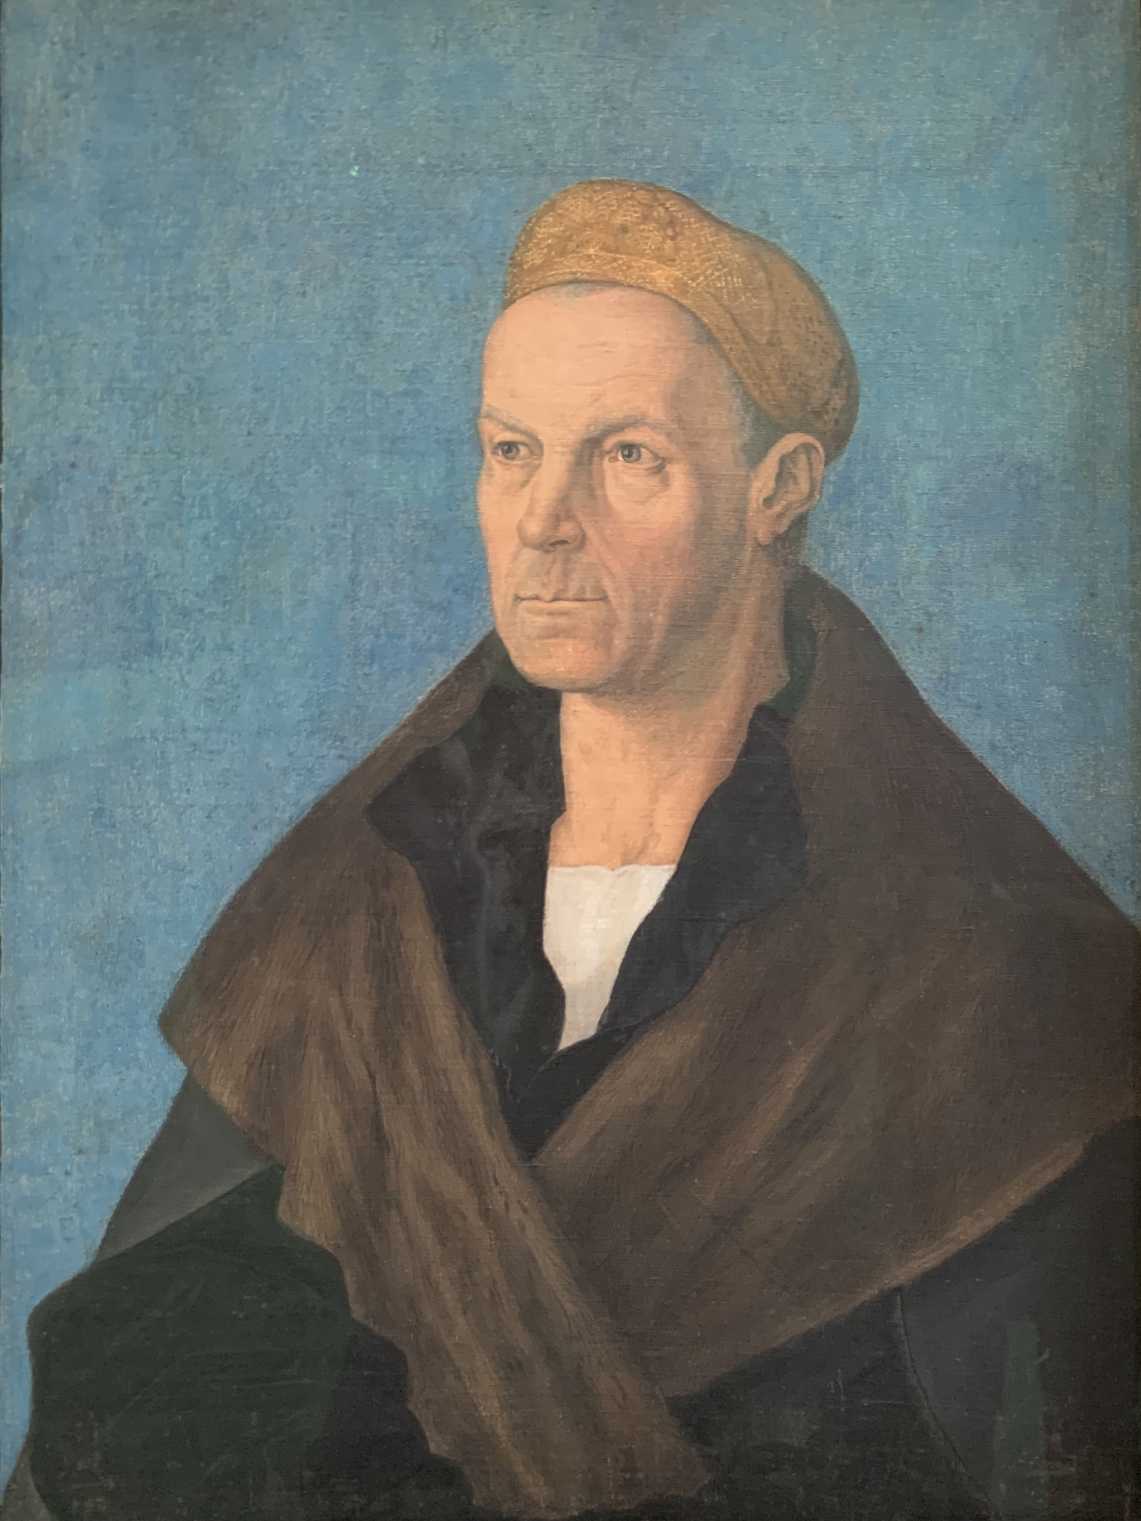 Jakob Fugger, Portrait von Albrecht Dürer um 1519